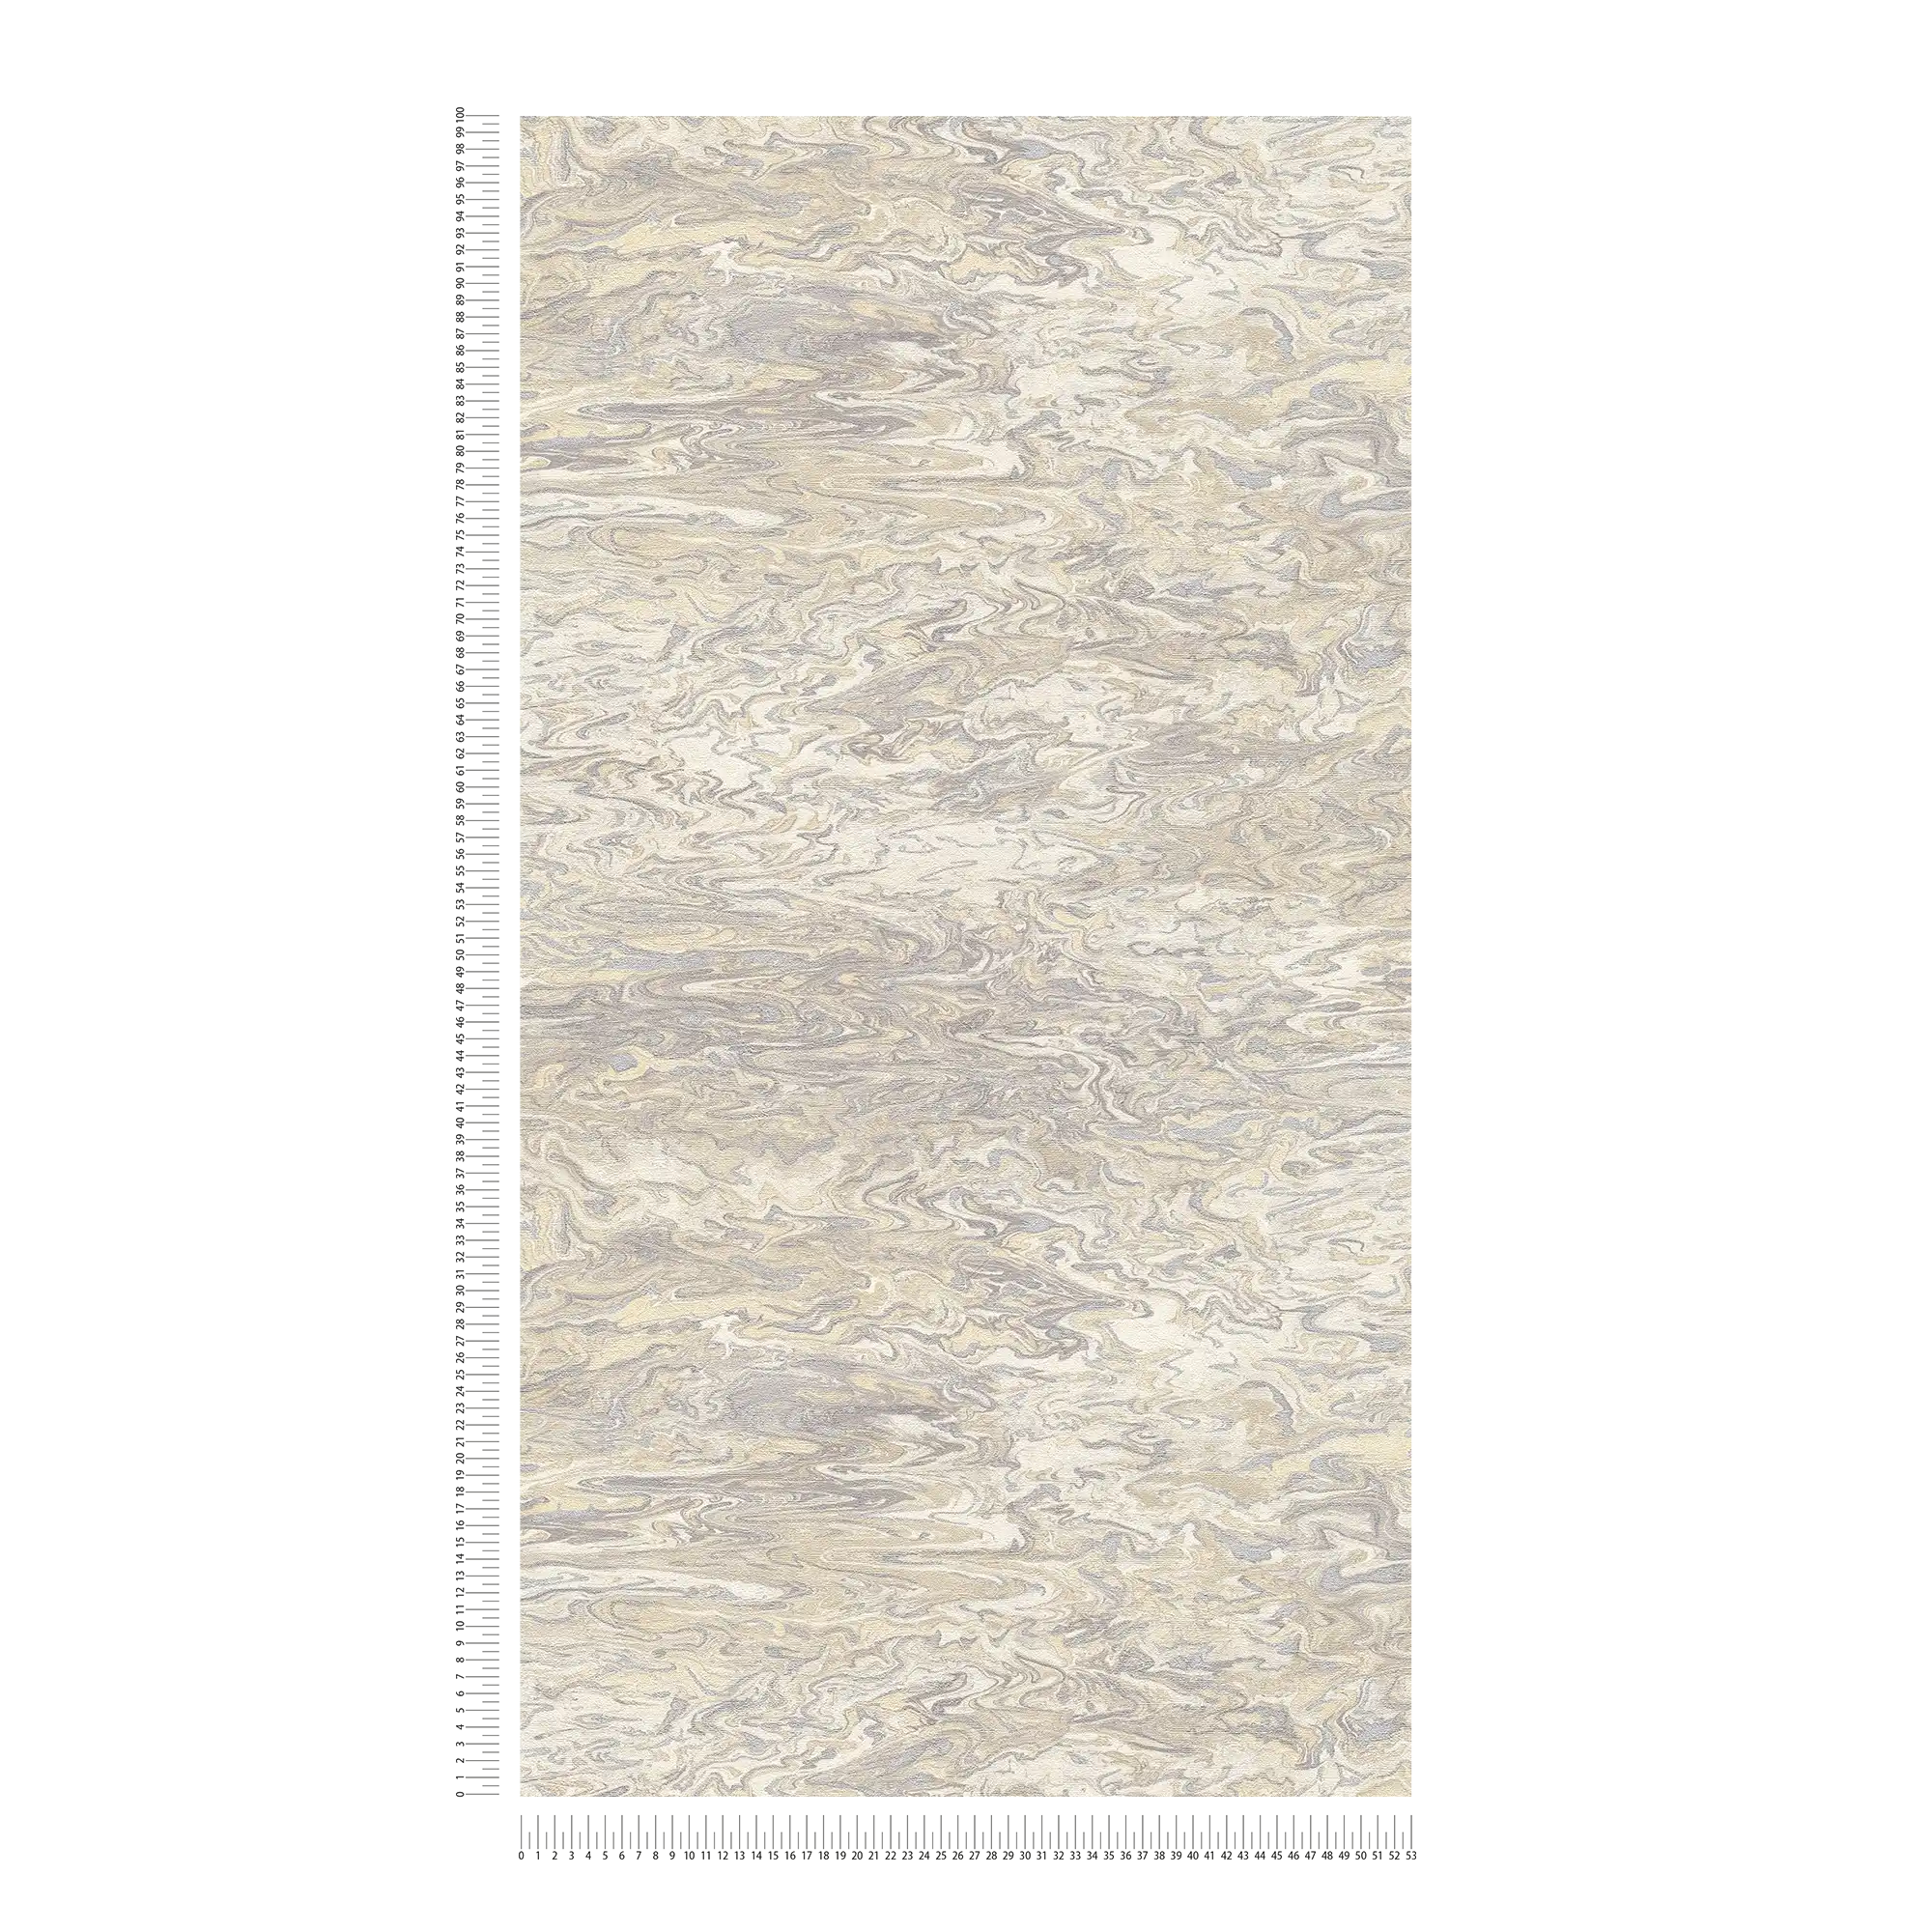             Carta da parati marmorizzata Effetto carta di marmo - bianco, beige, crema
        